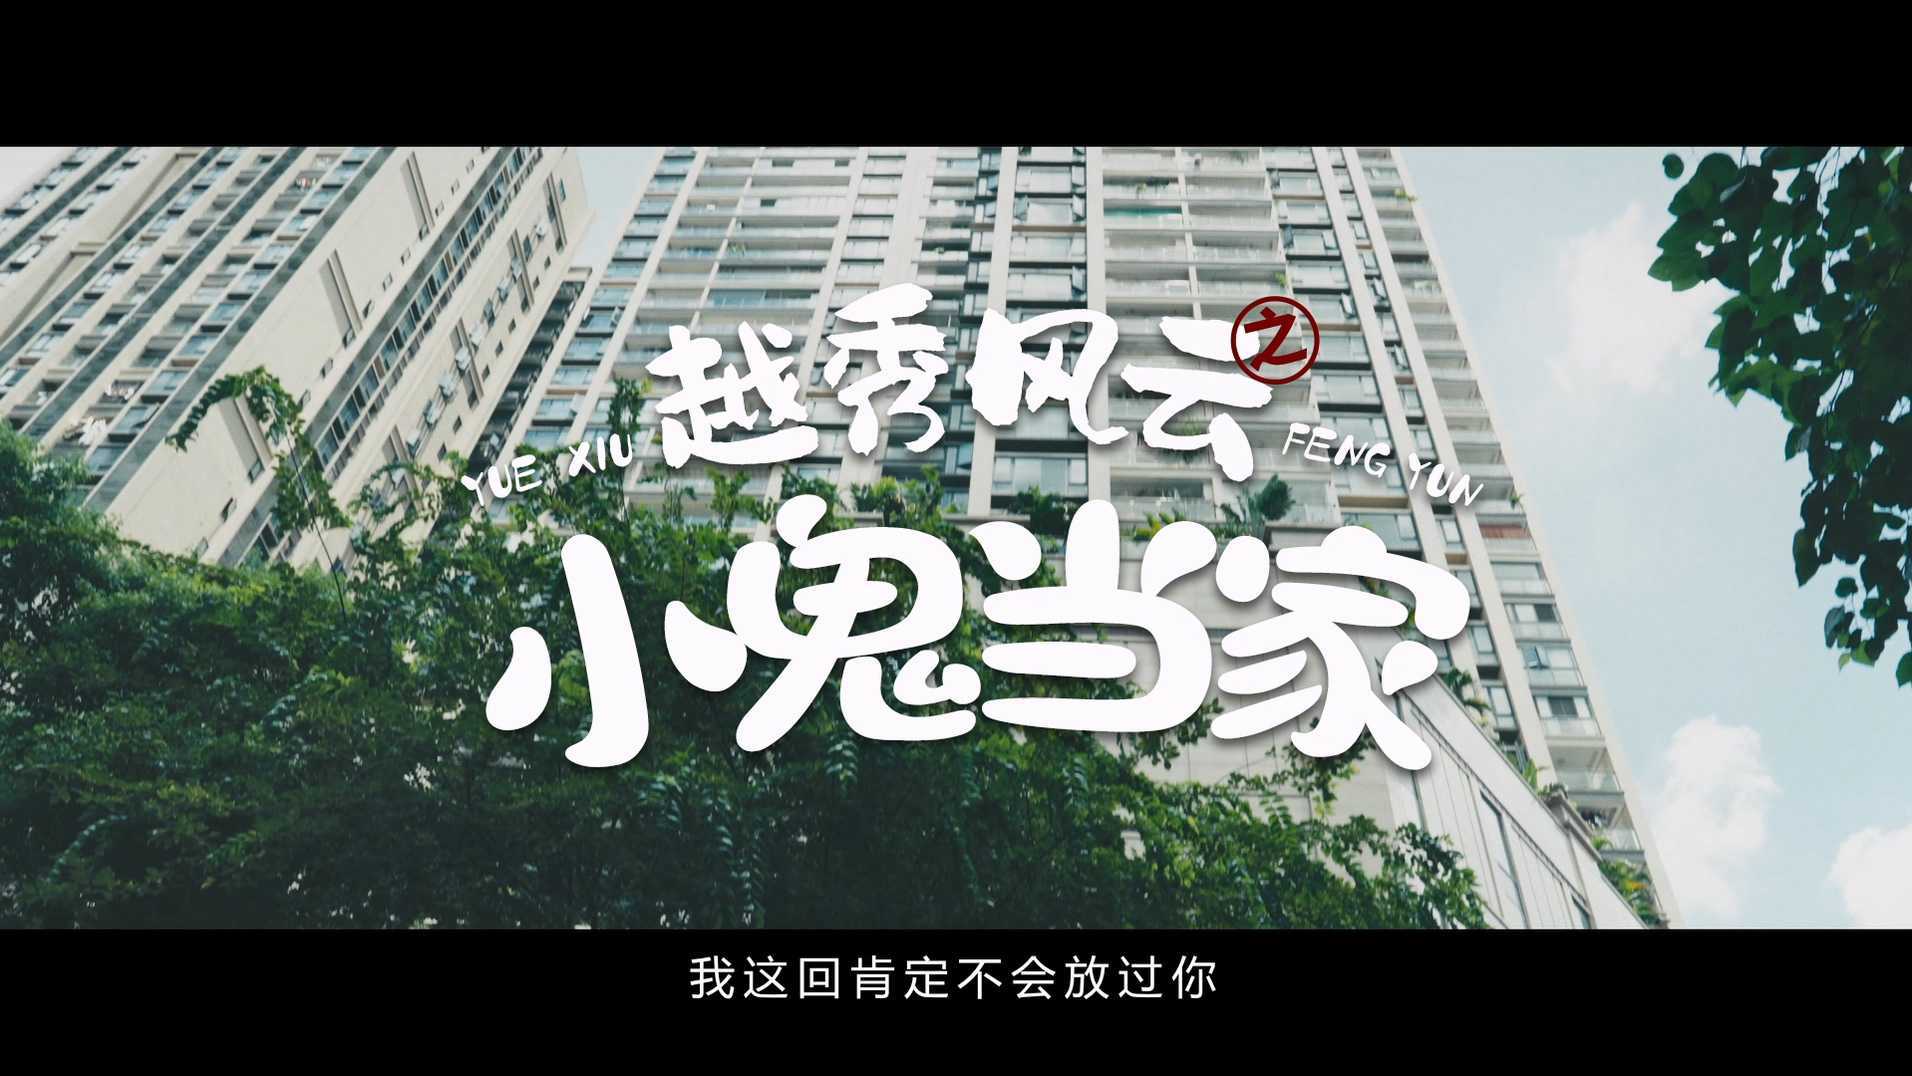 广州市越秀区消防救援大队形象公益宣传片之熊孩子篇